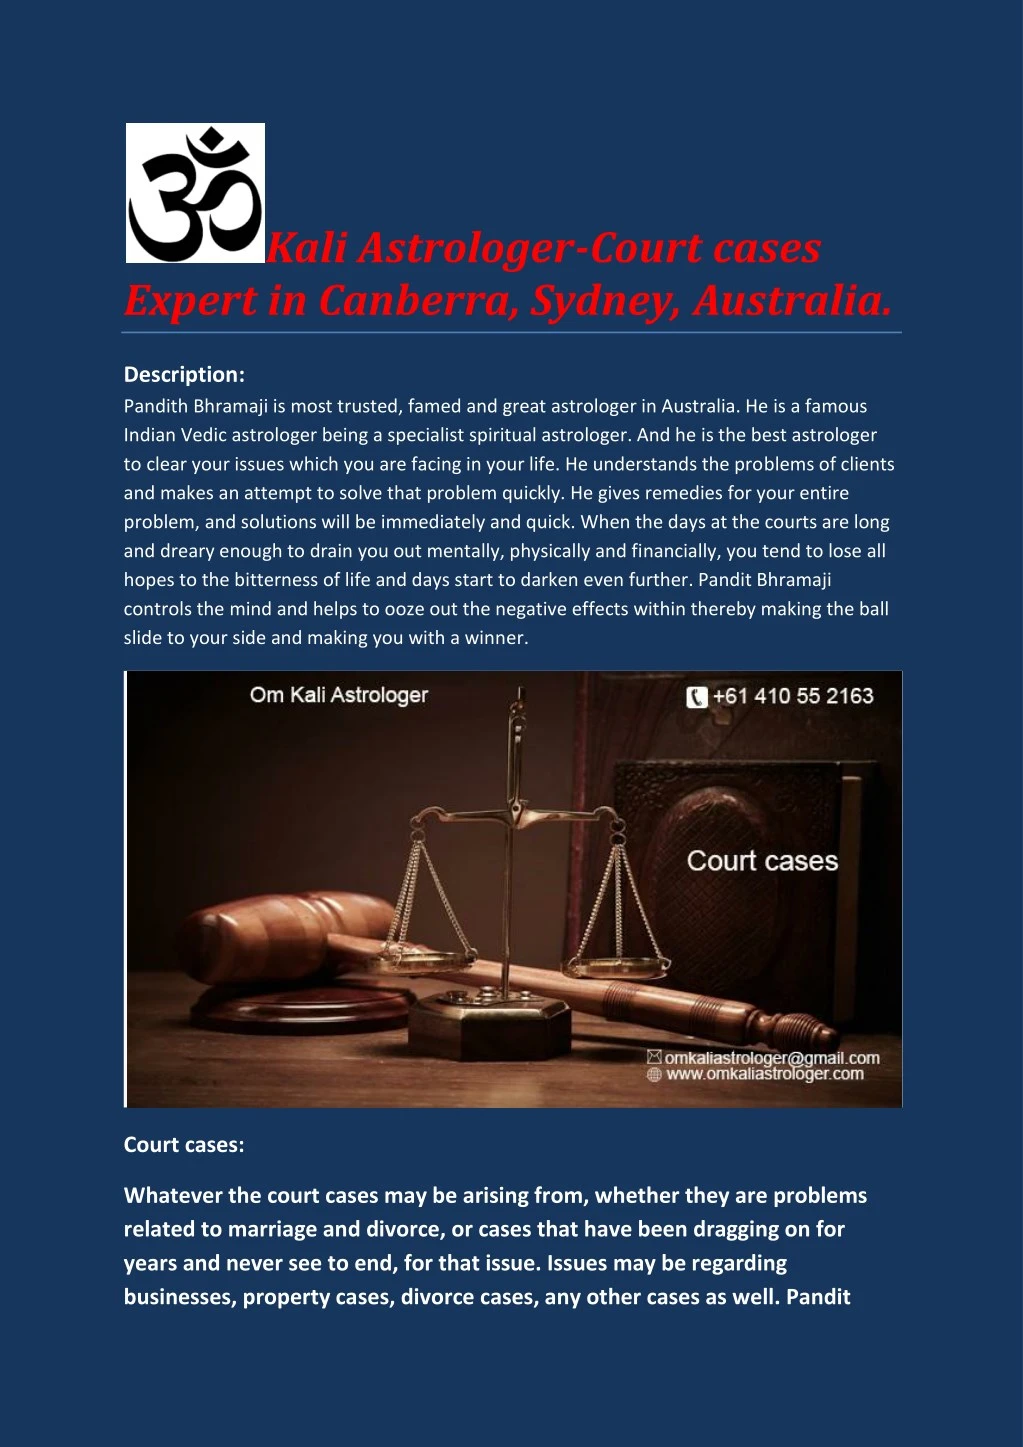 kali astrologer court cases expert in canberra